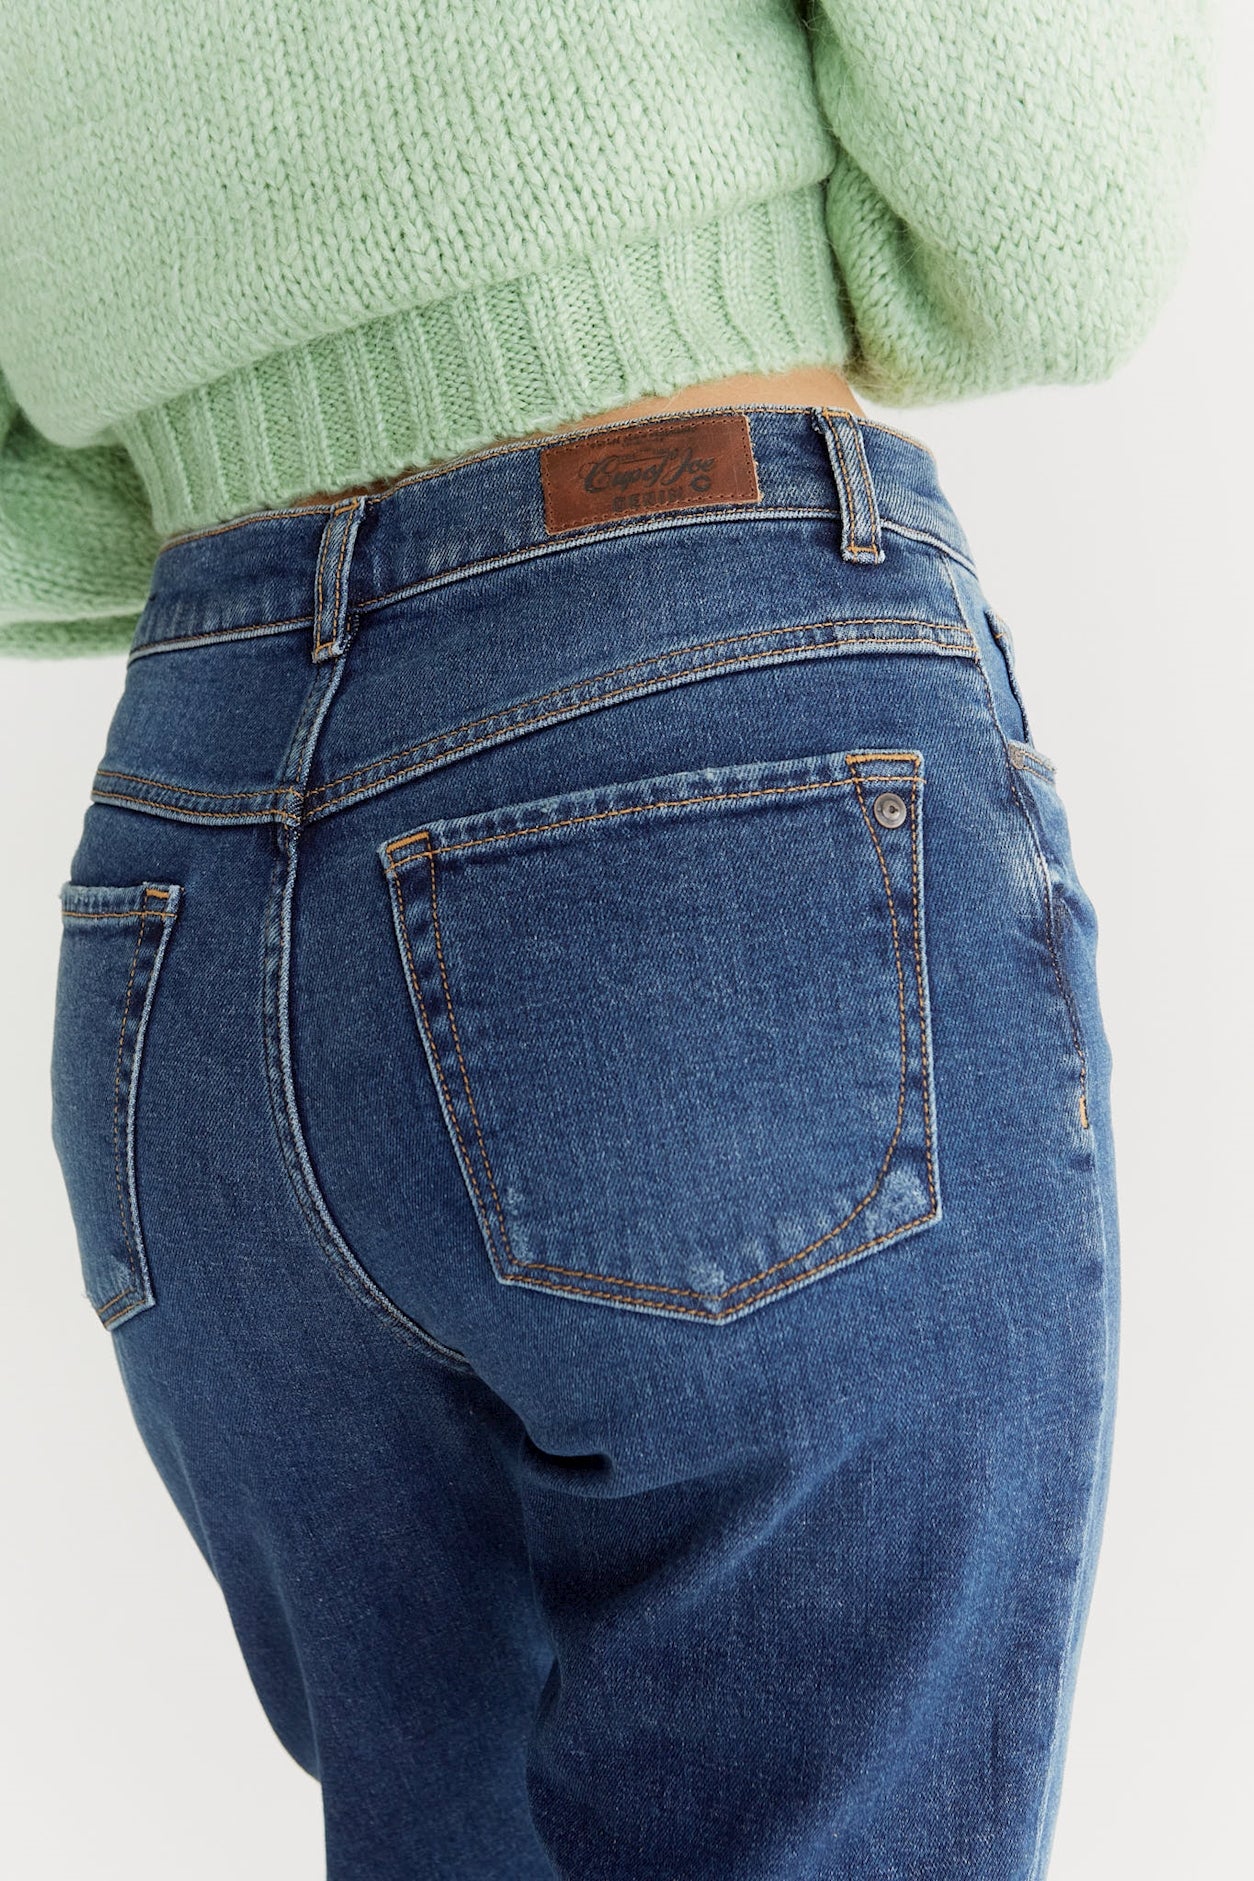 Lynn - Mid Waist 5 Pocket Mom Jeans - Astra Blue